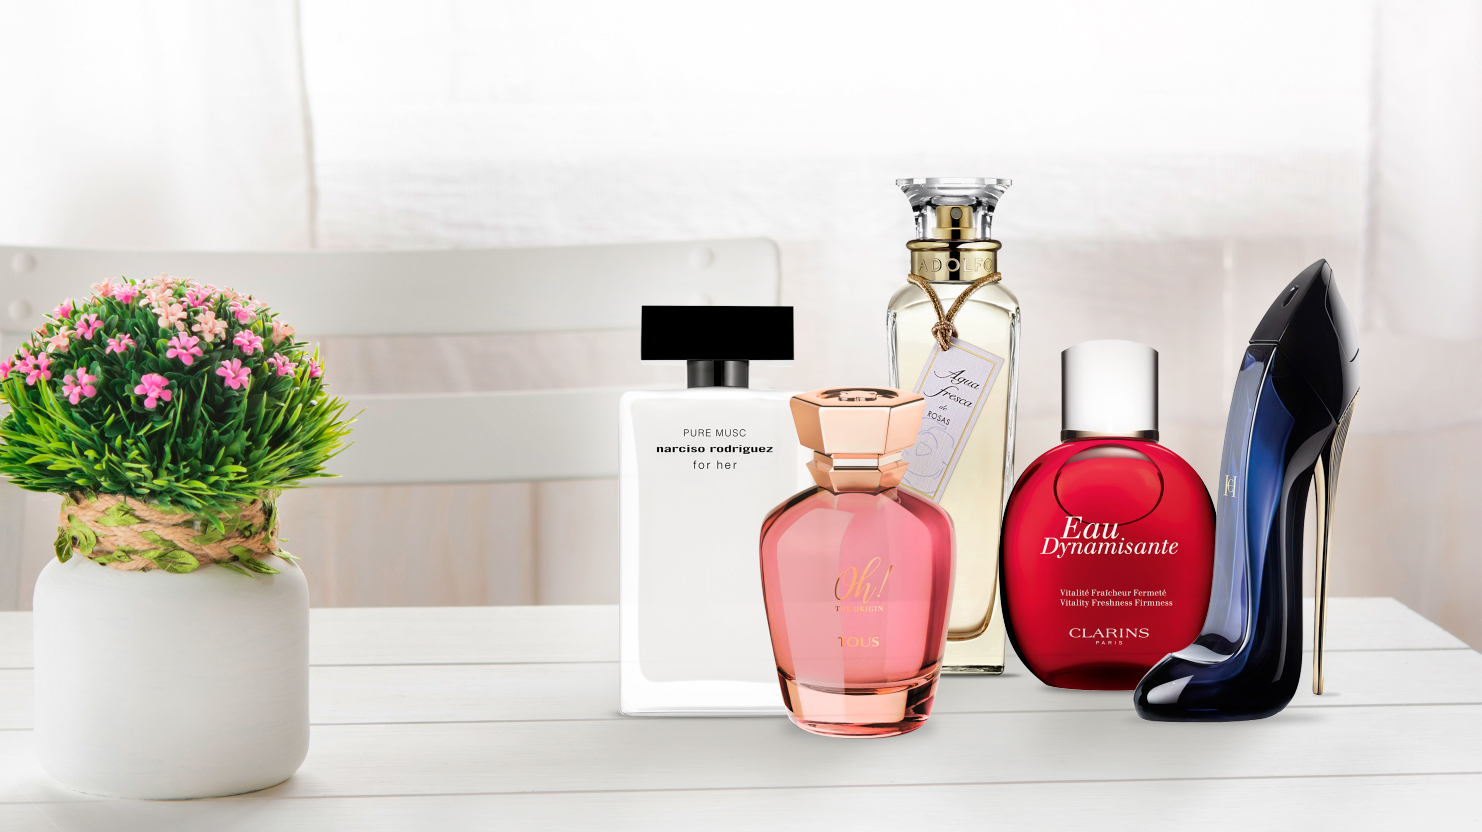 Preparamos un Día de la Madre muy especial con una selección de perfumes para regalar a mamá